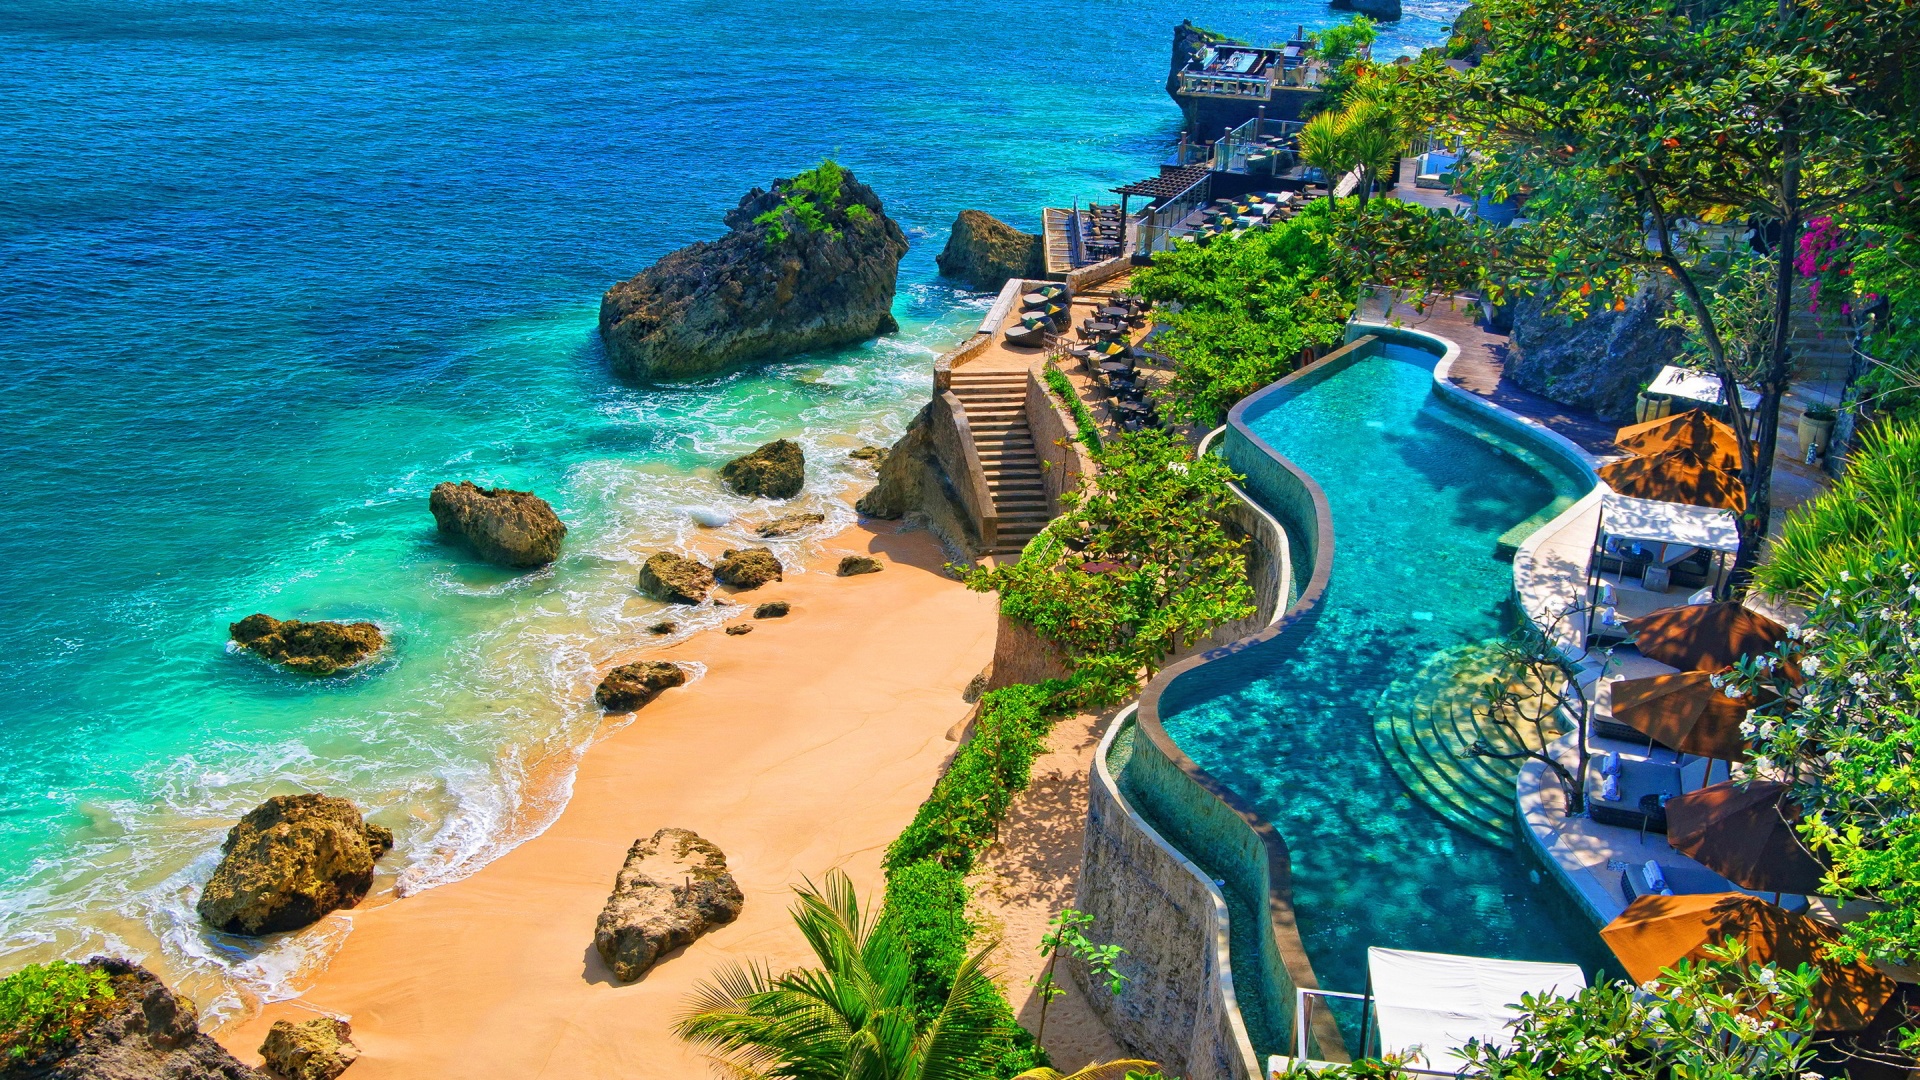 Peisaj mirific din Bali, Indonezia